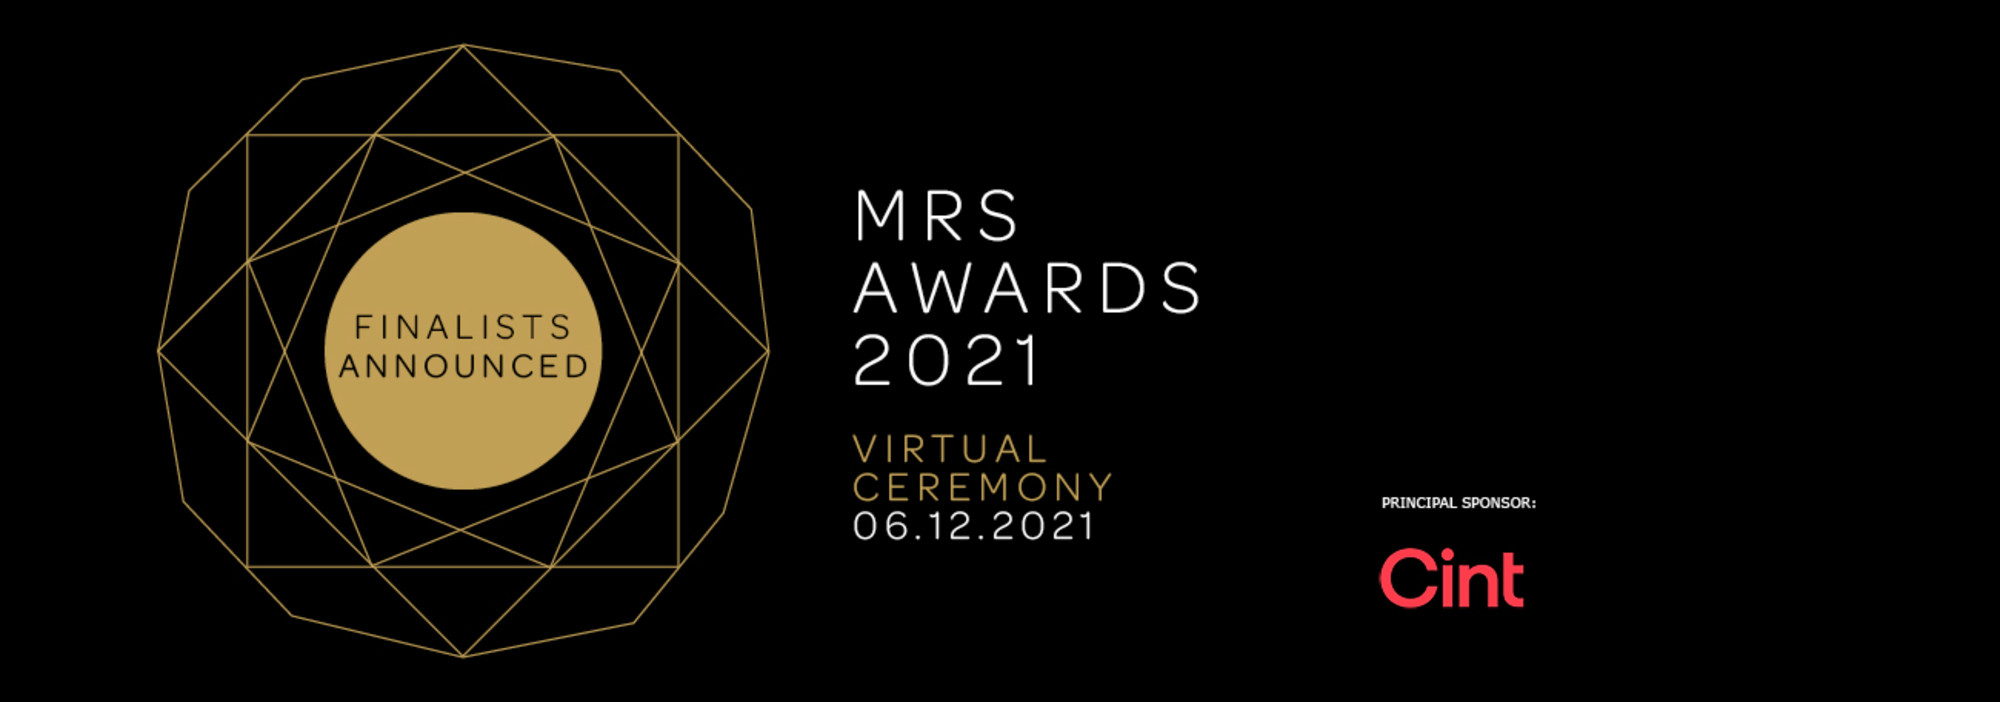 MRS-AWARDS-2021-banner